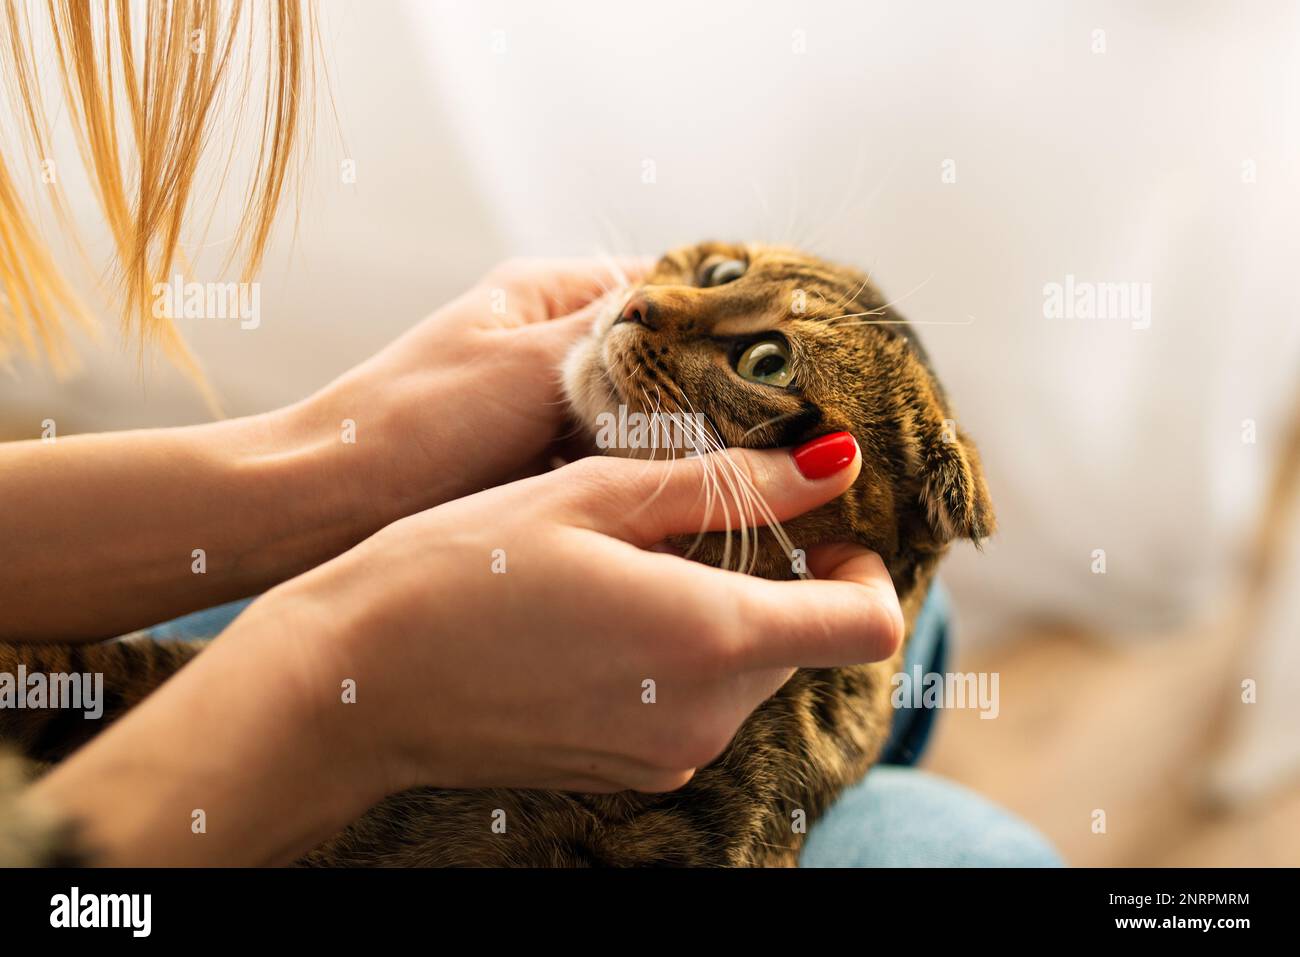 En gros plan, une femme tient dans ses mains un adorable chat écossais tabby aux yeux verts qui s'assoit sur ses genoux dans ses bras et l'encadre, le concept aimant et les animaux de compagnie Banque D'Images